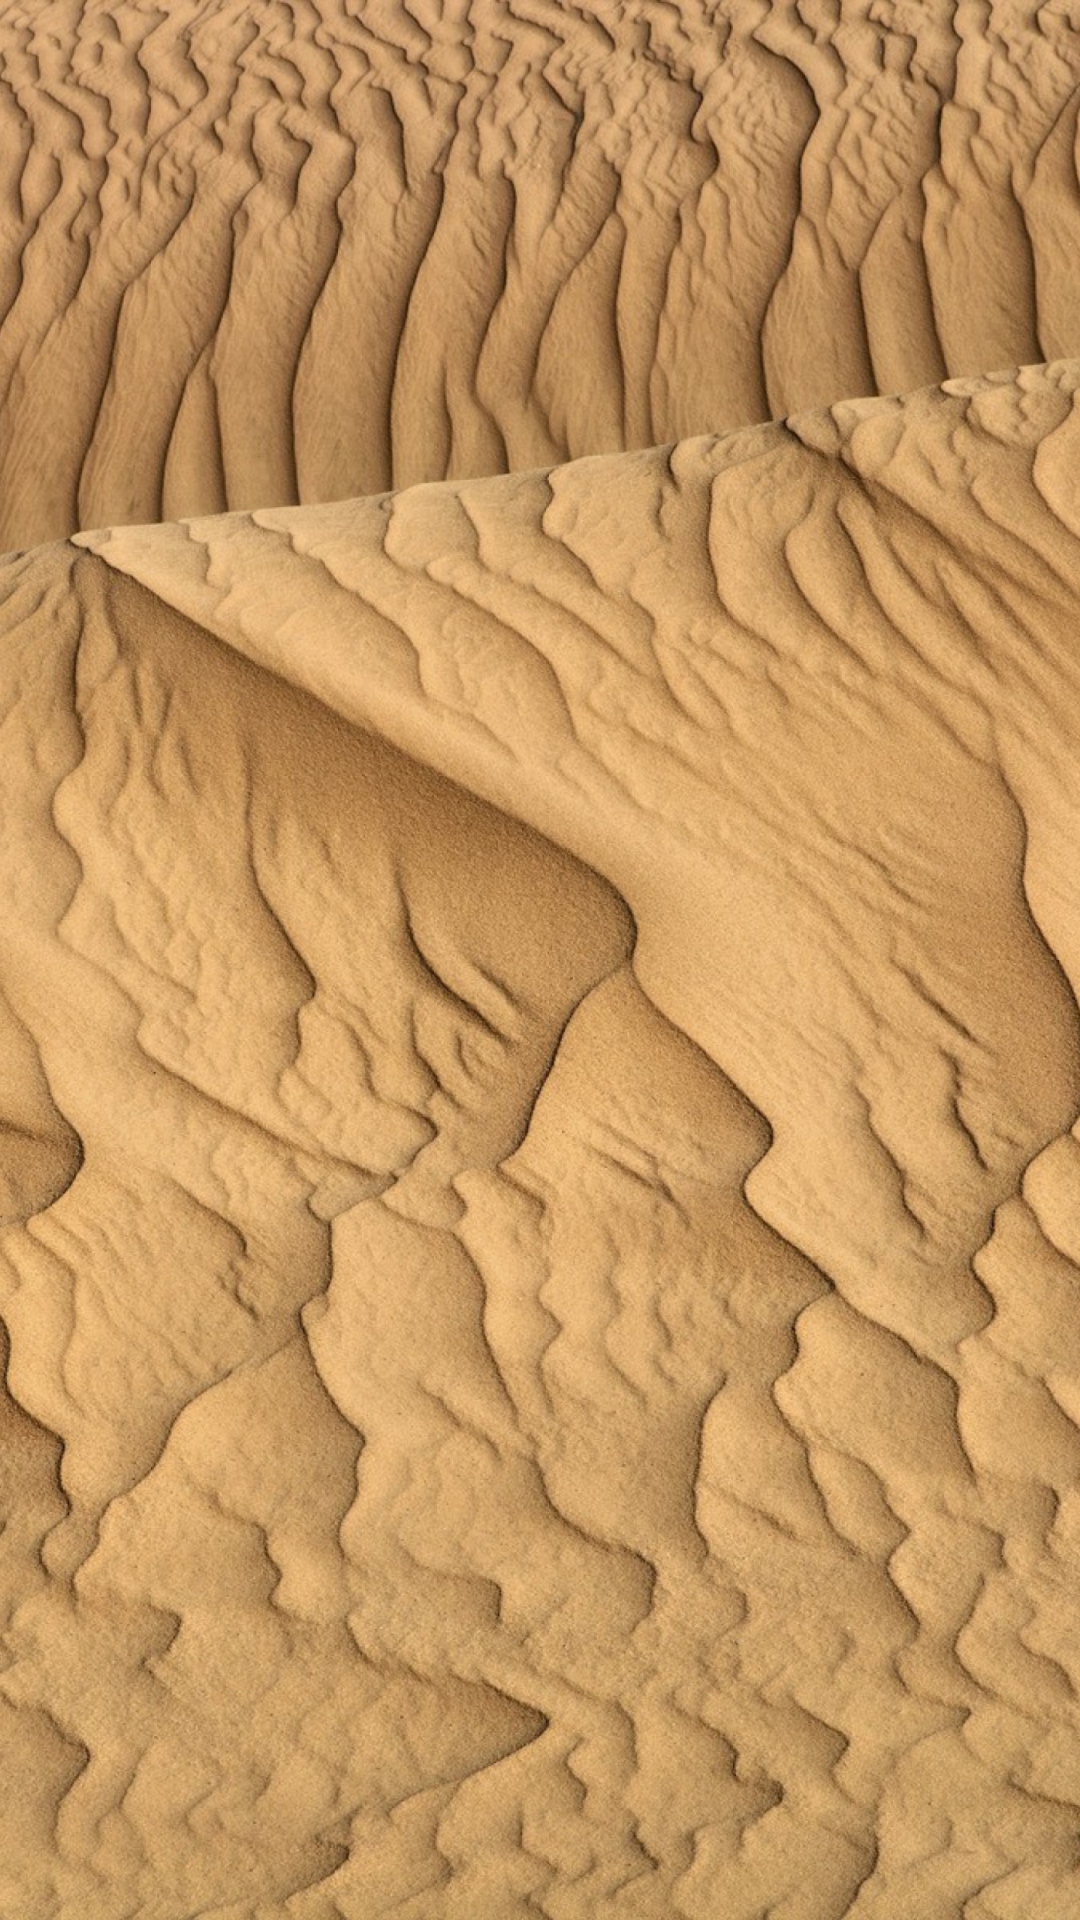 Sahara Sands screenshot #1 1080x1920